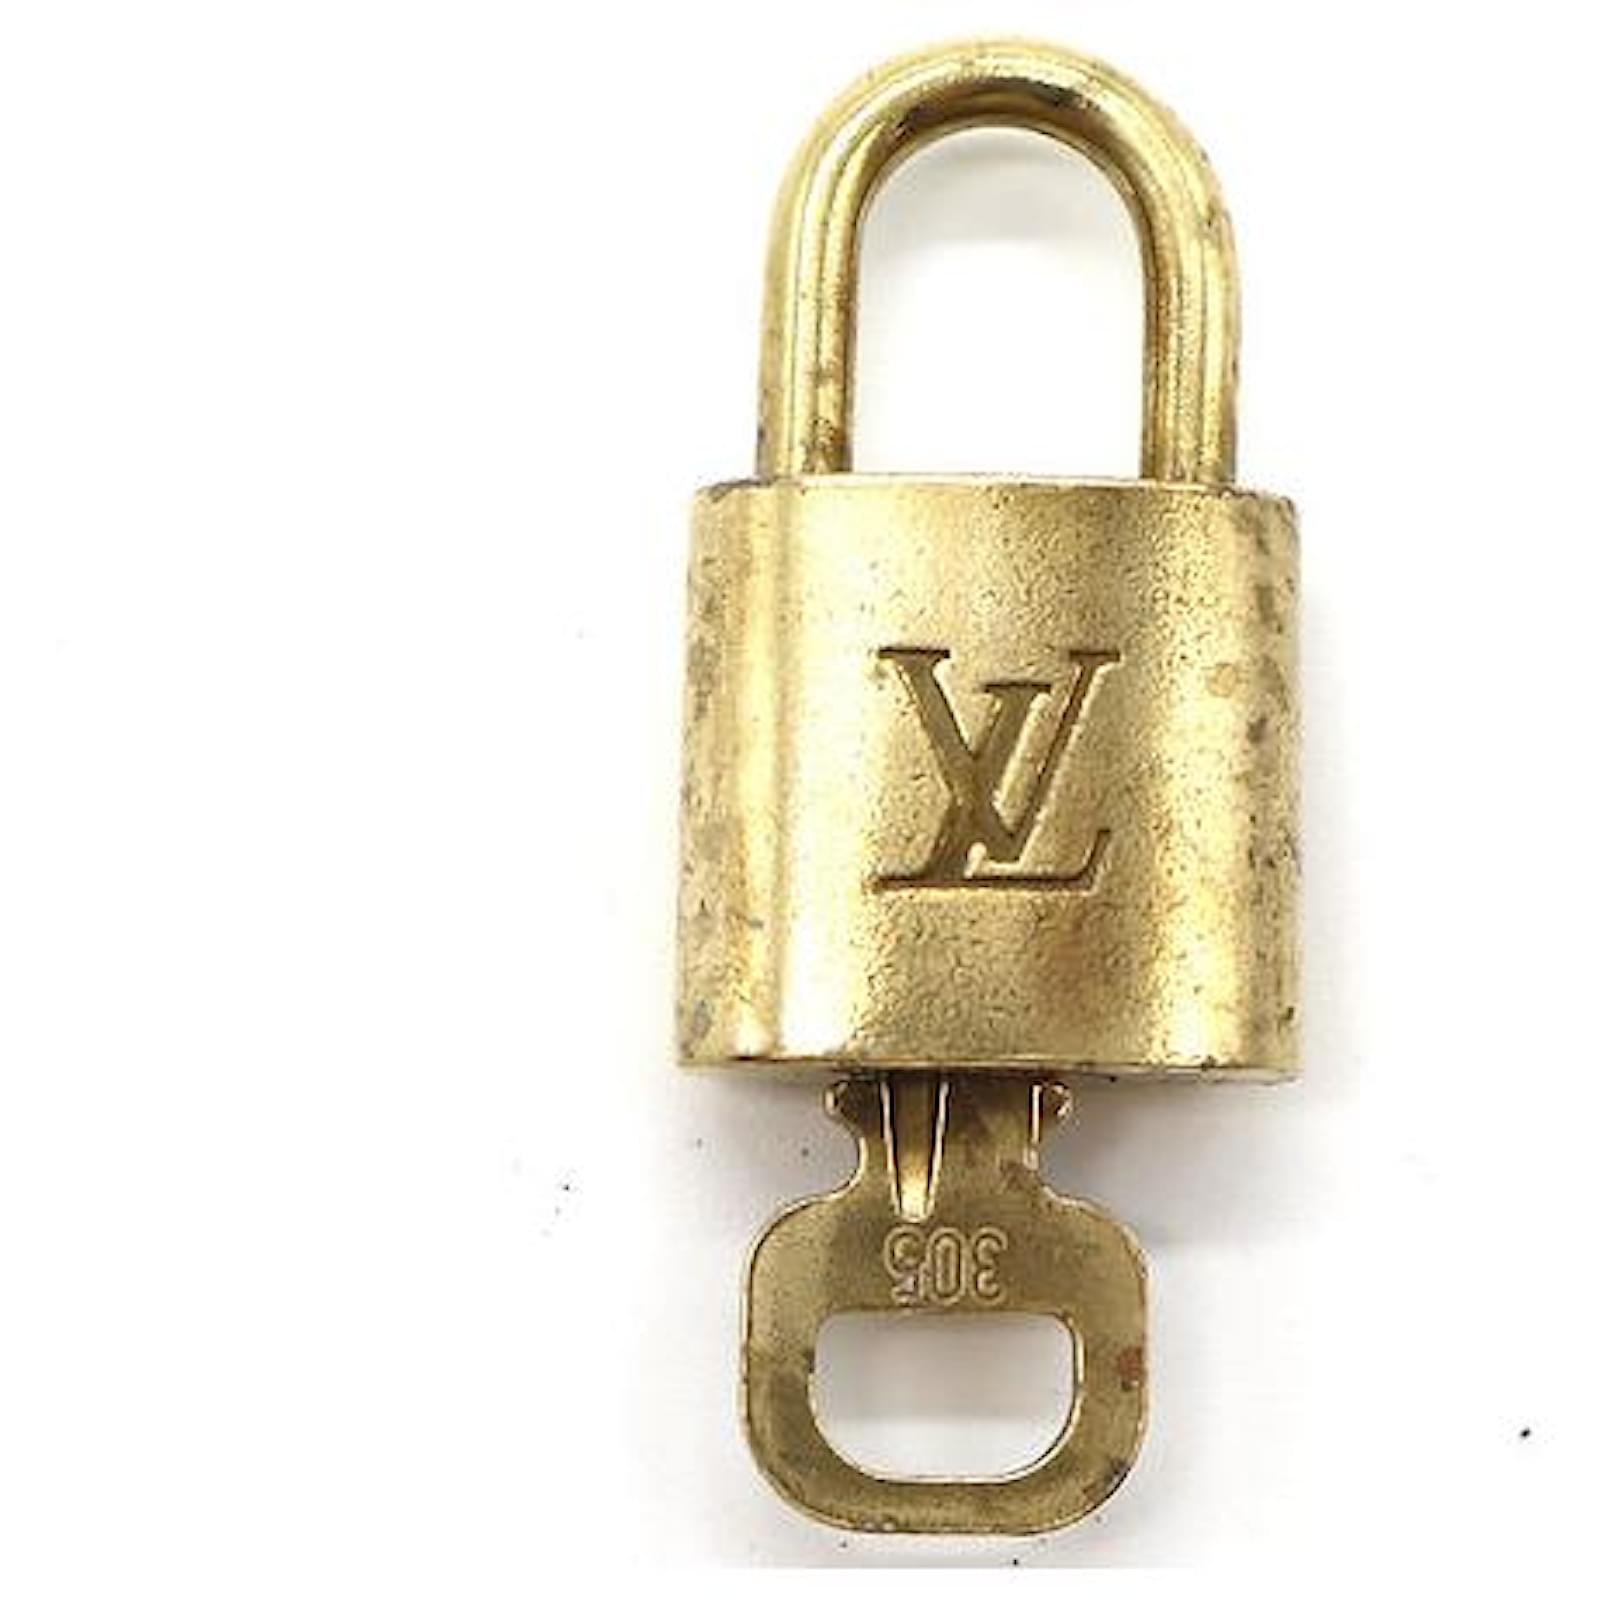 Louis Vuitton Brass Padlock & Key Set - Gold Bag Accessories